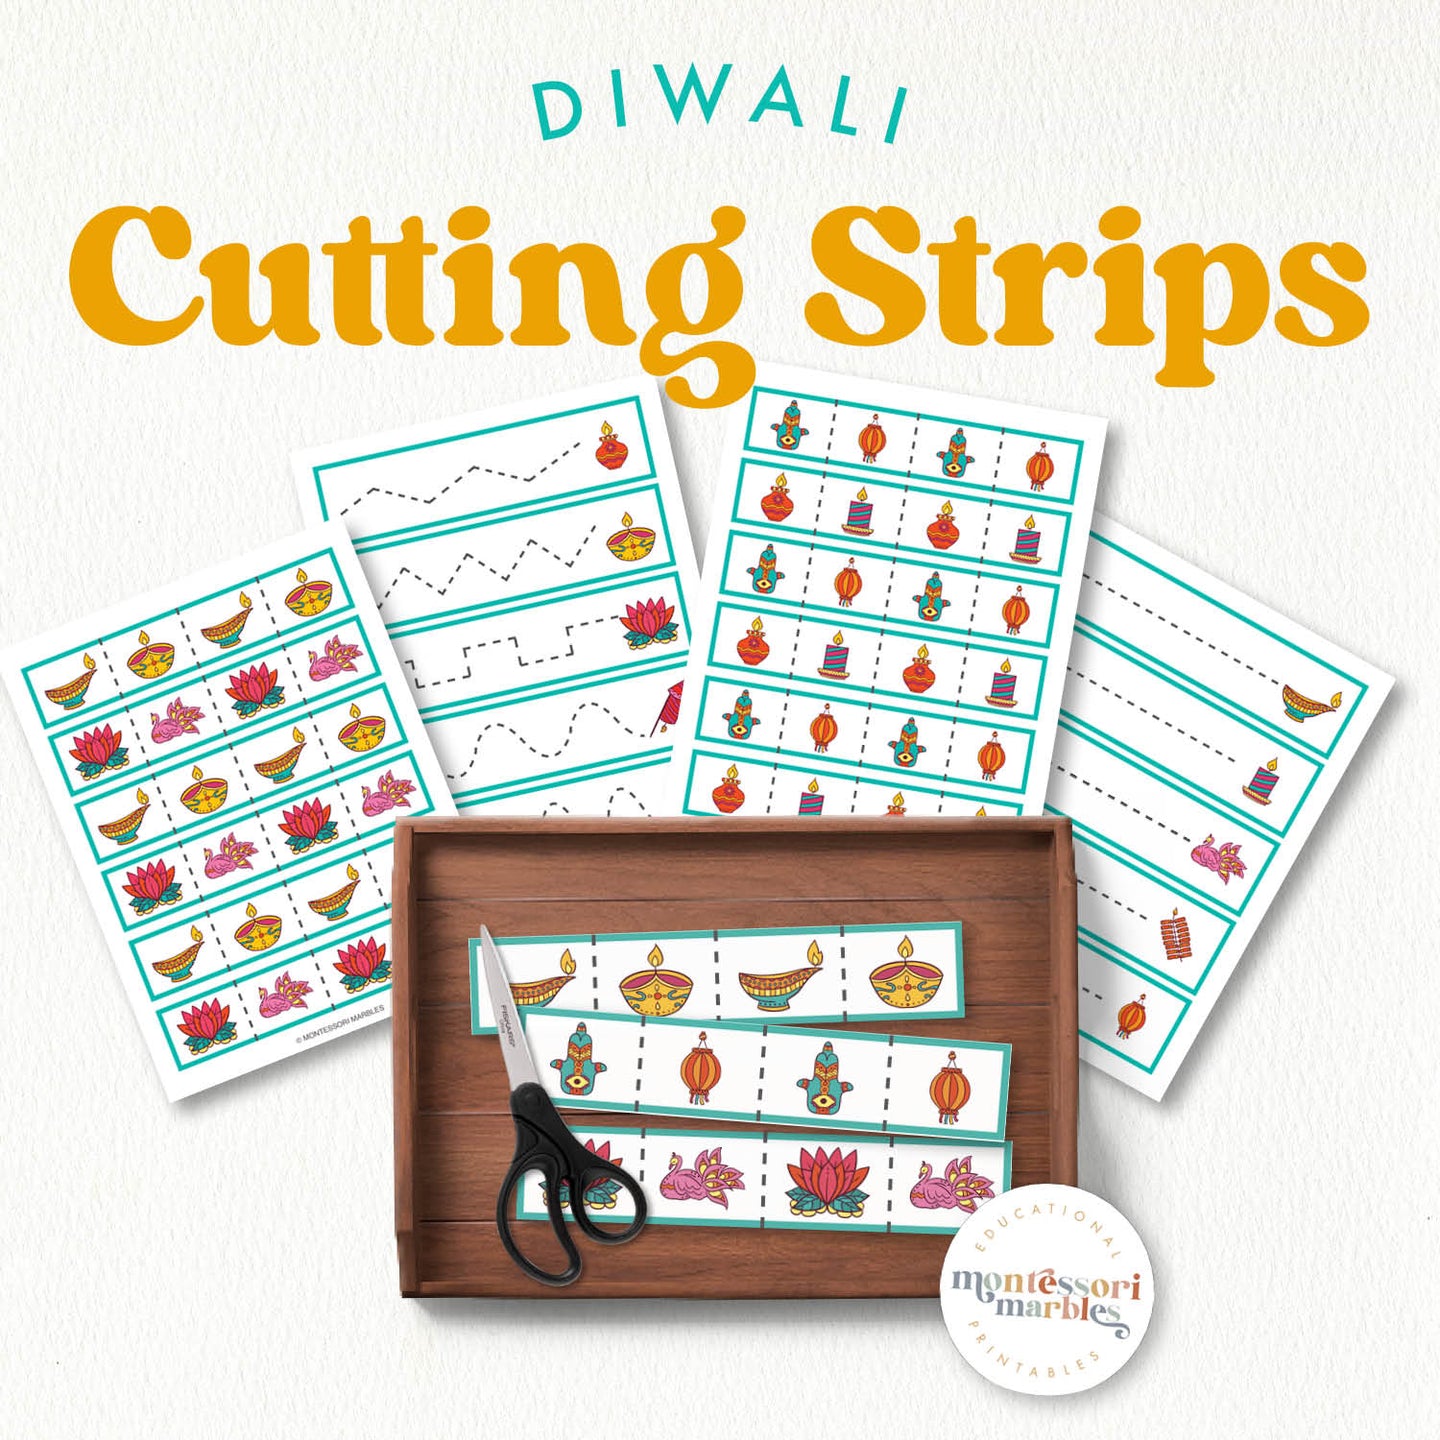 Diwali Cutting Strips